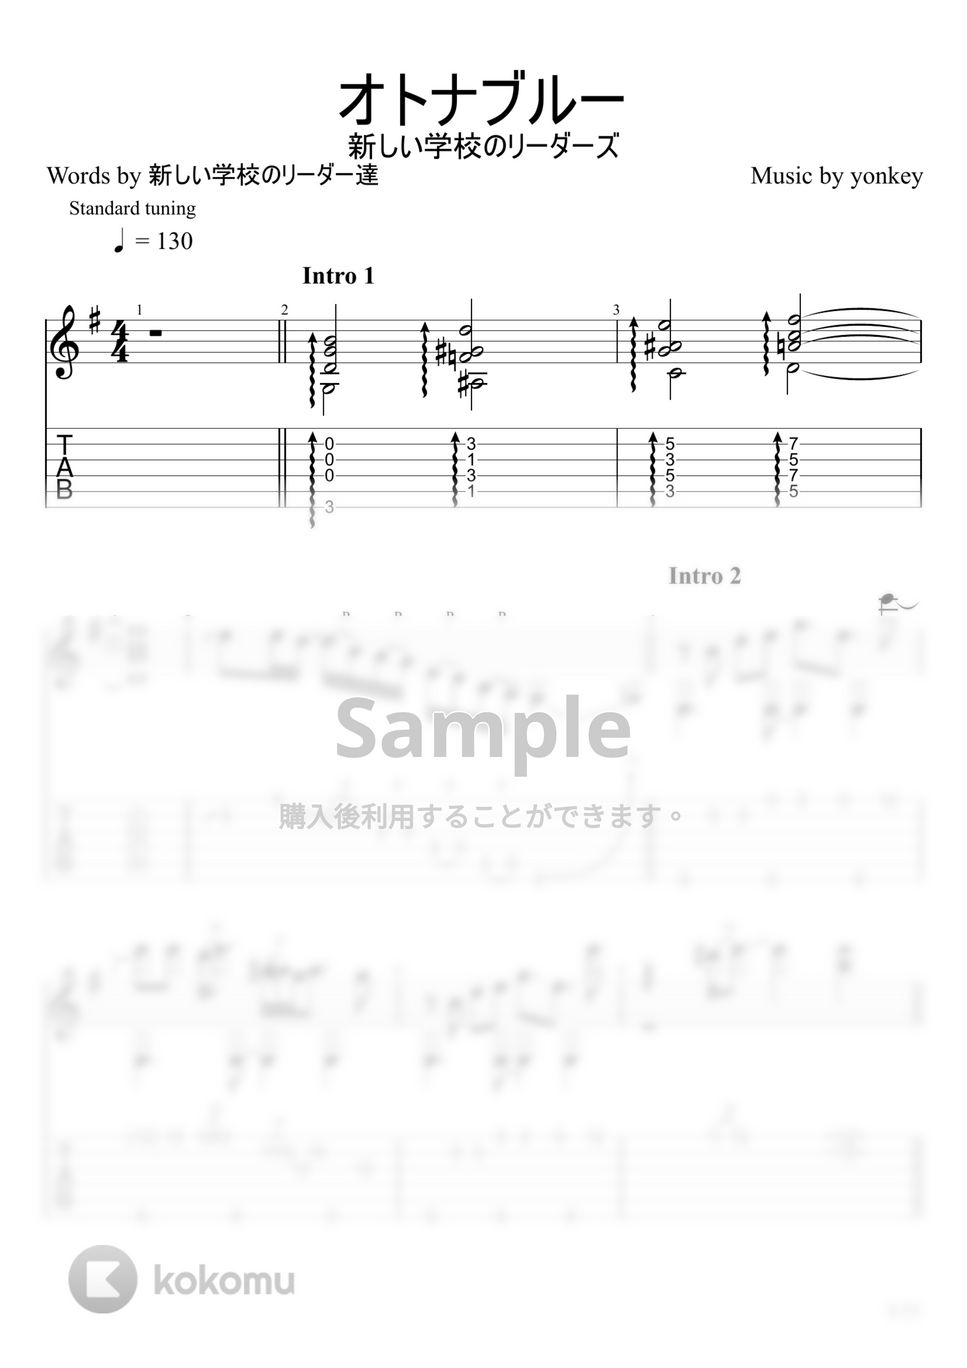 新しい学校のリーダーズ - オトナブルー (ソロギター) by u3danchou